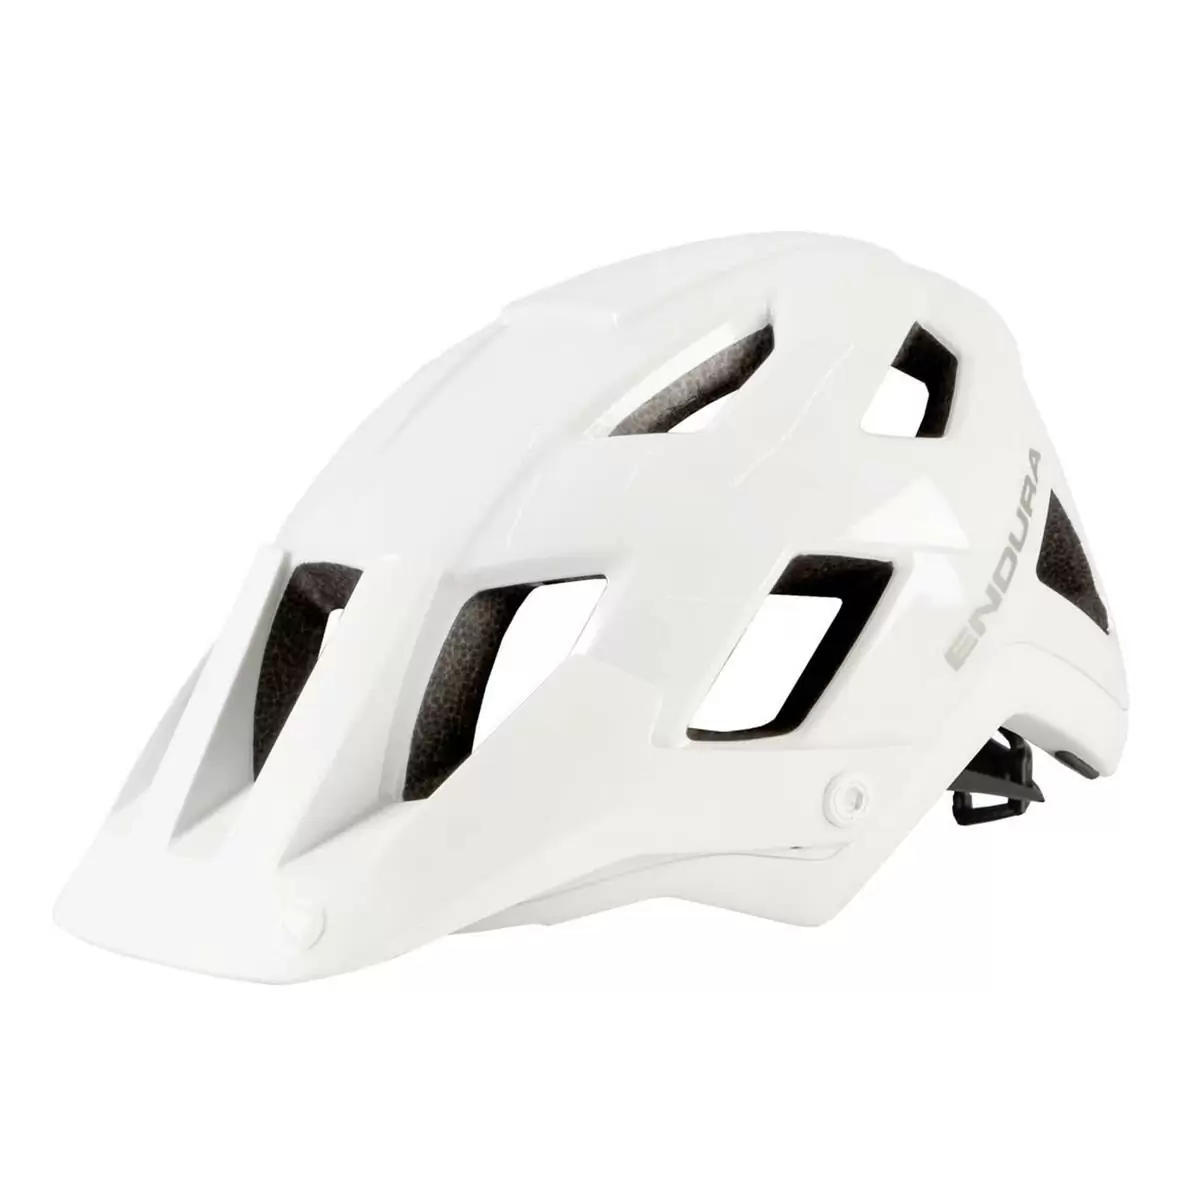 Hummvee Plus MTB Enduro Helmet White Size S/M (51-56cm) - image